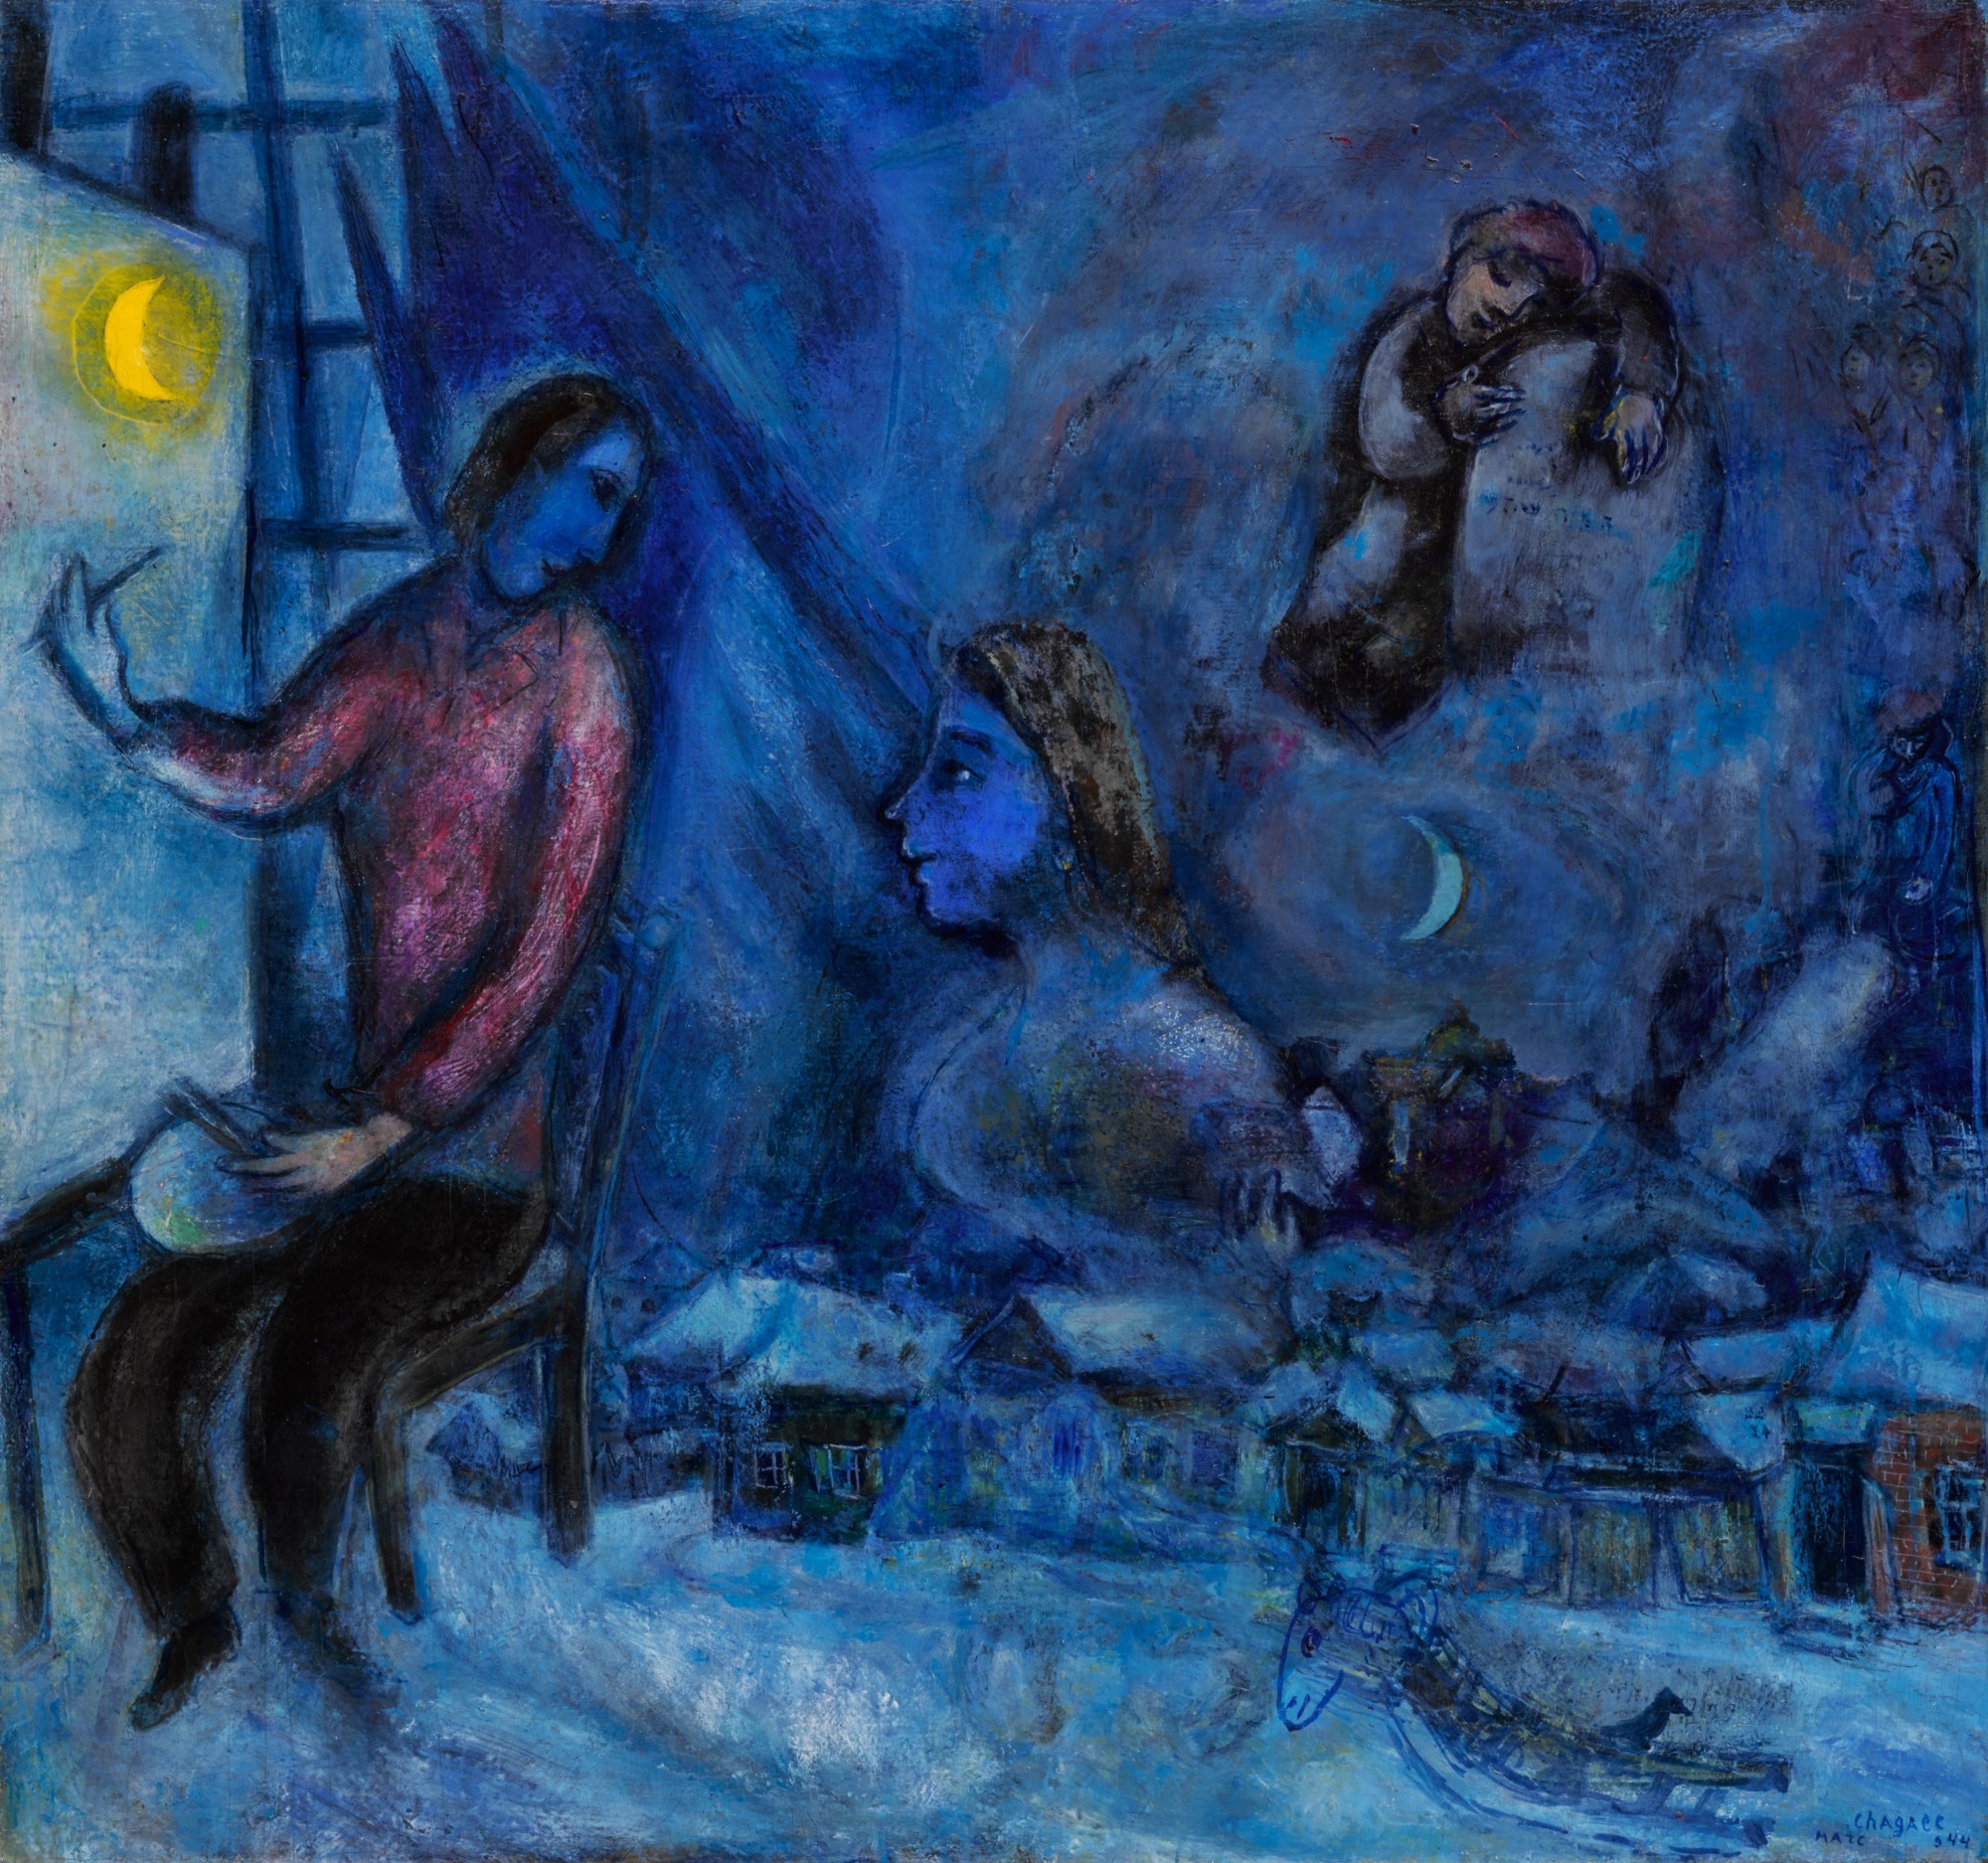 Hommage au passé (La Ville) by Marc Chagall, dated 1944